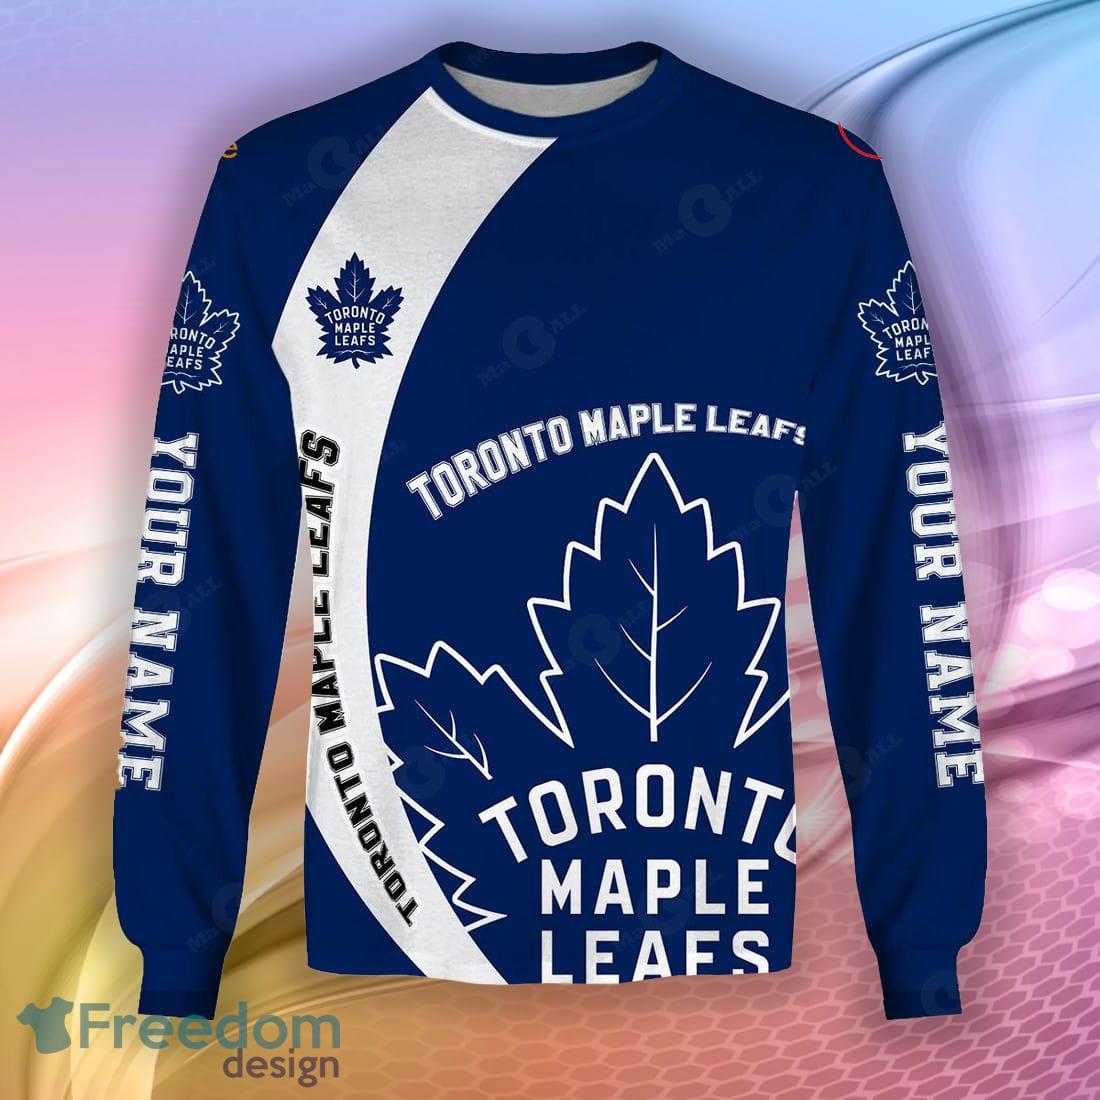 NHL Mens Toronto Maple Leafs Long Sleeve Raglan T-shirt